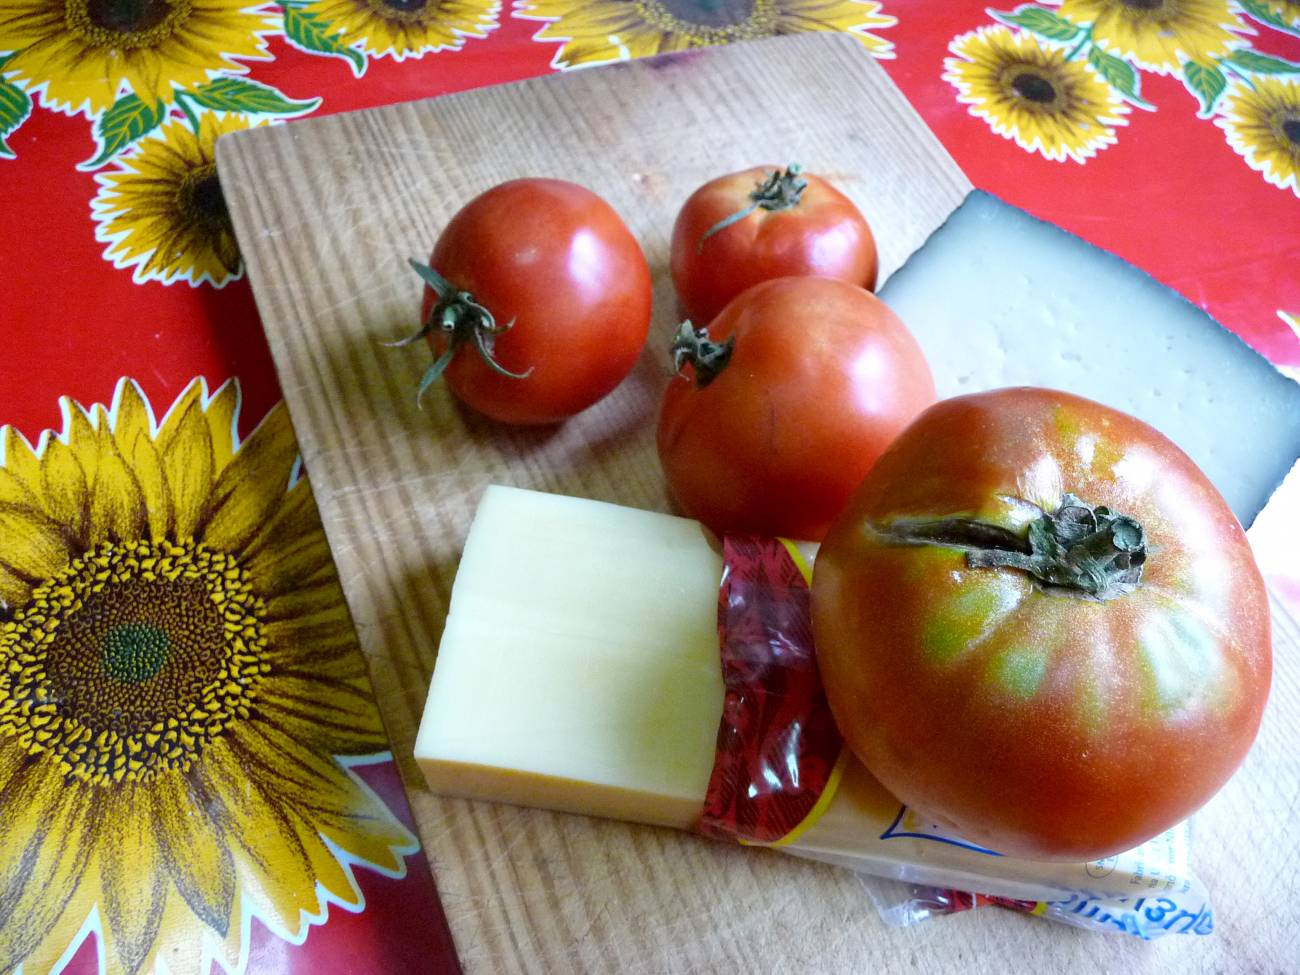 Los tomates maduros y los quesos fermentados son ricos en GMS natural.